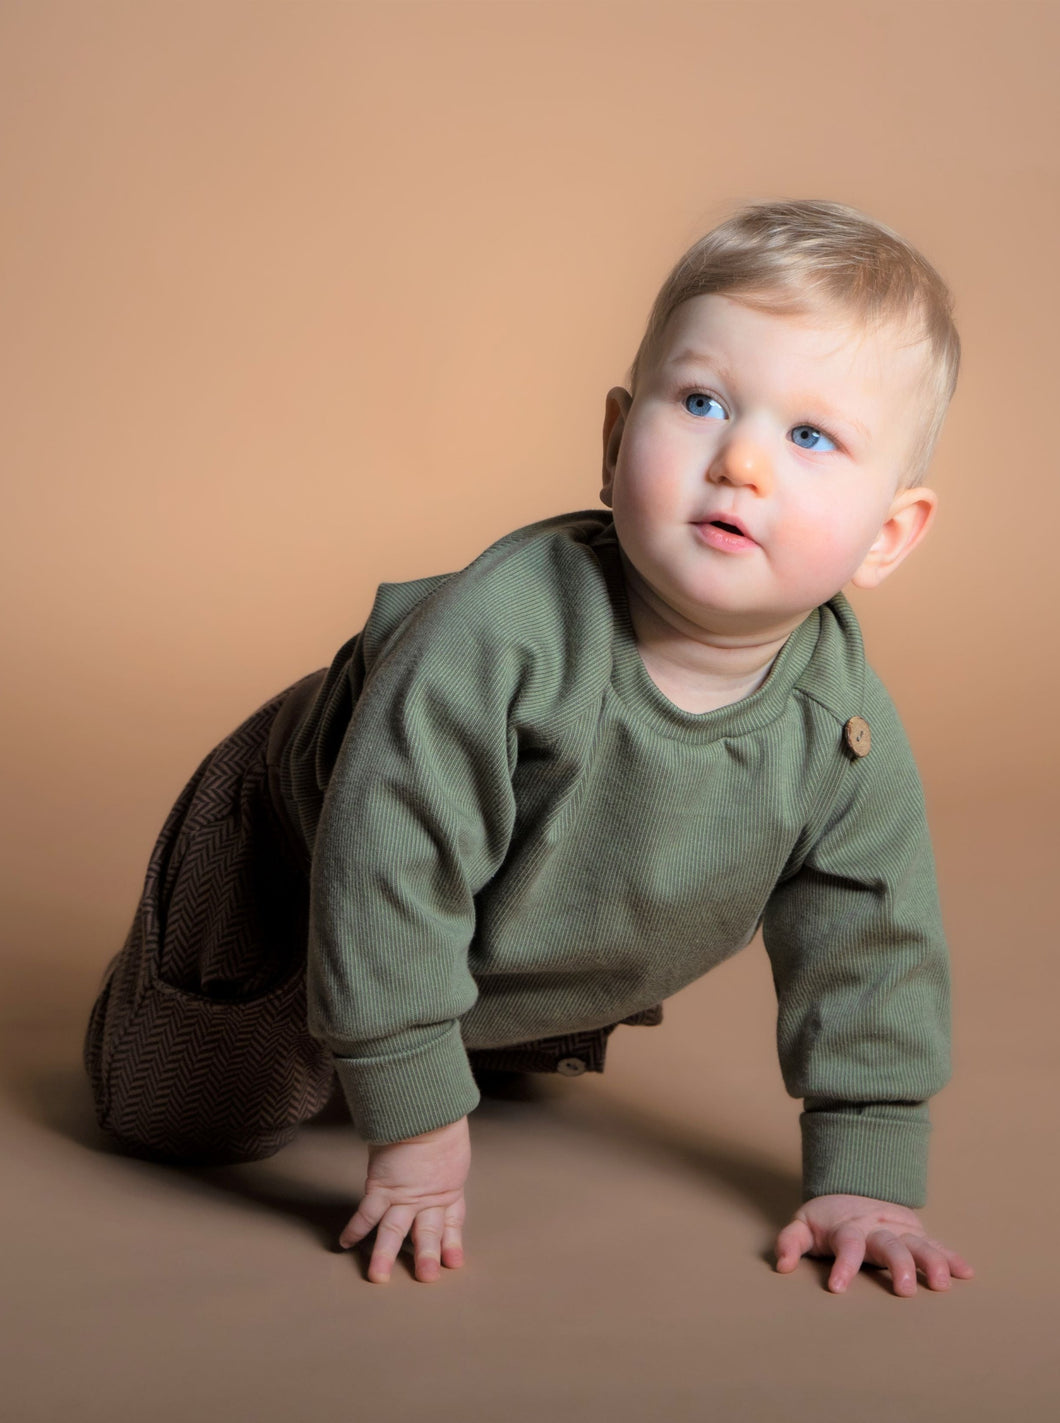 Baby trägt Outfit aus Naturfasern mit hohem Tragekomfort in neutralen Farben